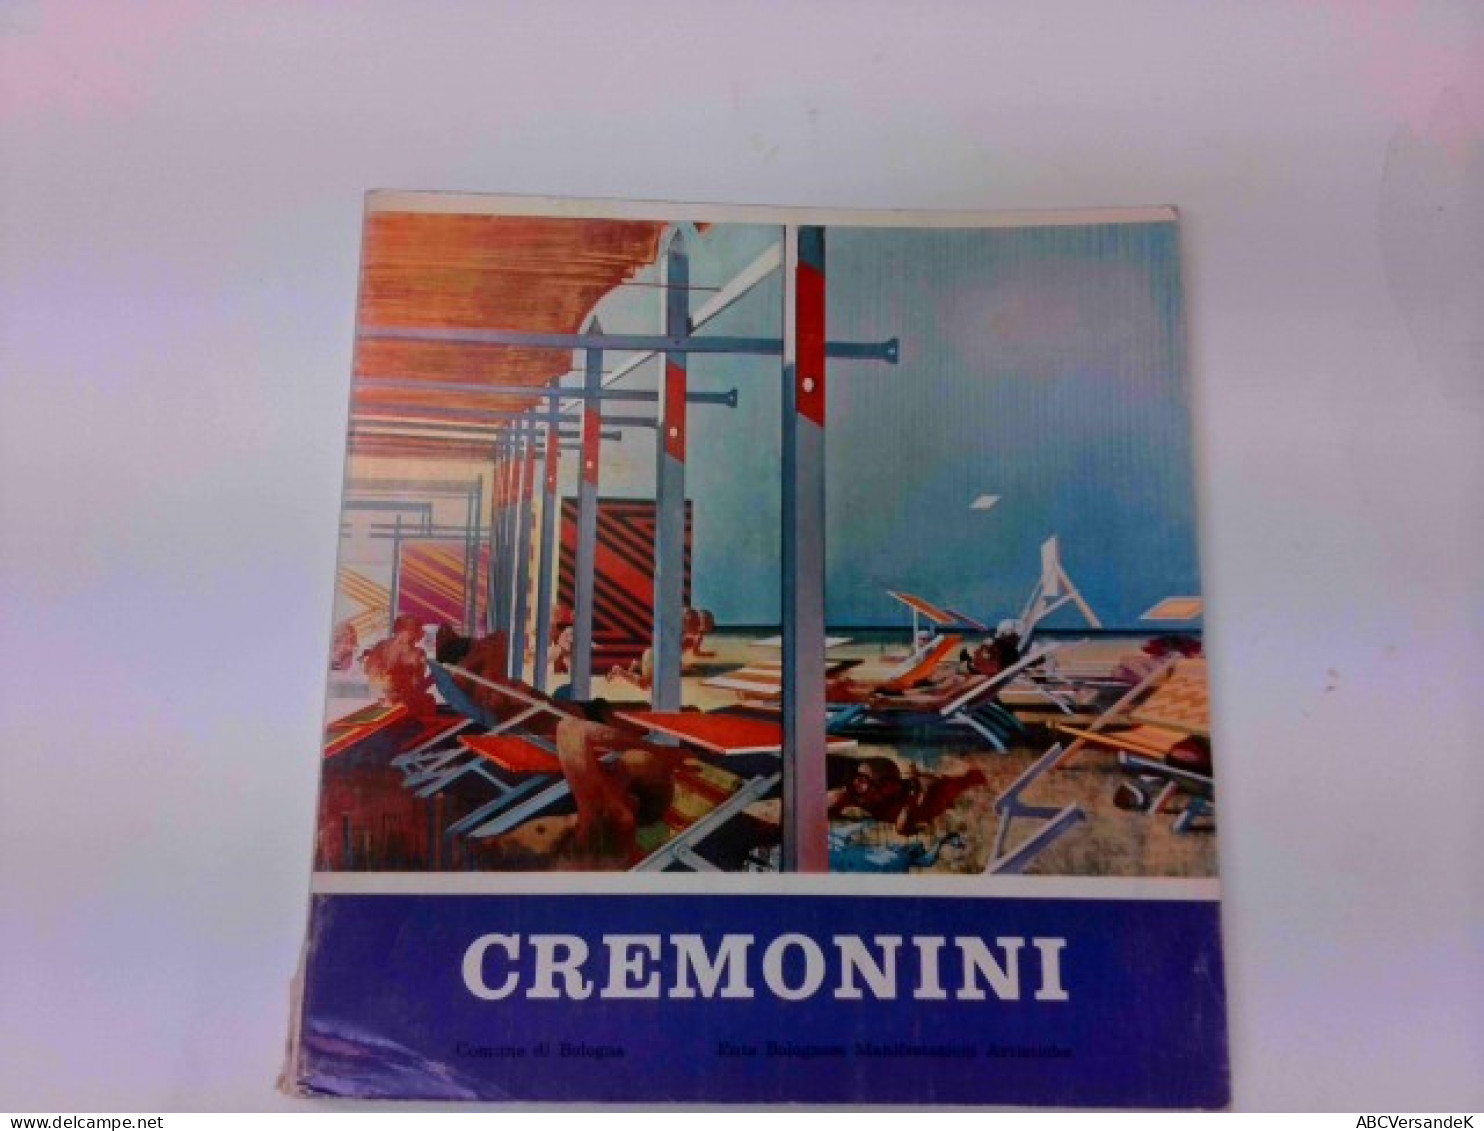 CREMONINI Comune Di Bologna, Leonardo Cremonini Mostra Antalogica 1953-1969 - Photographie